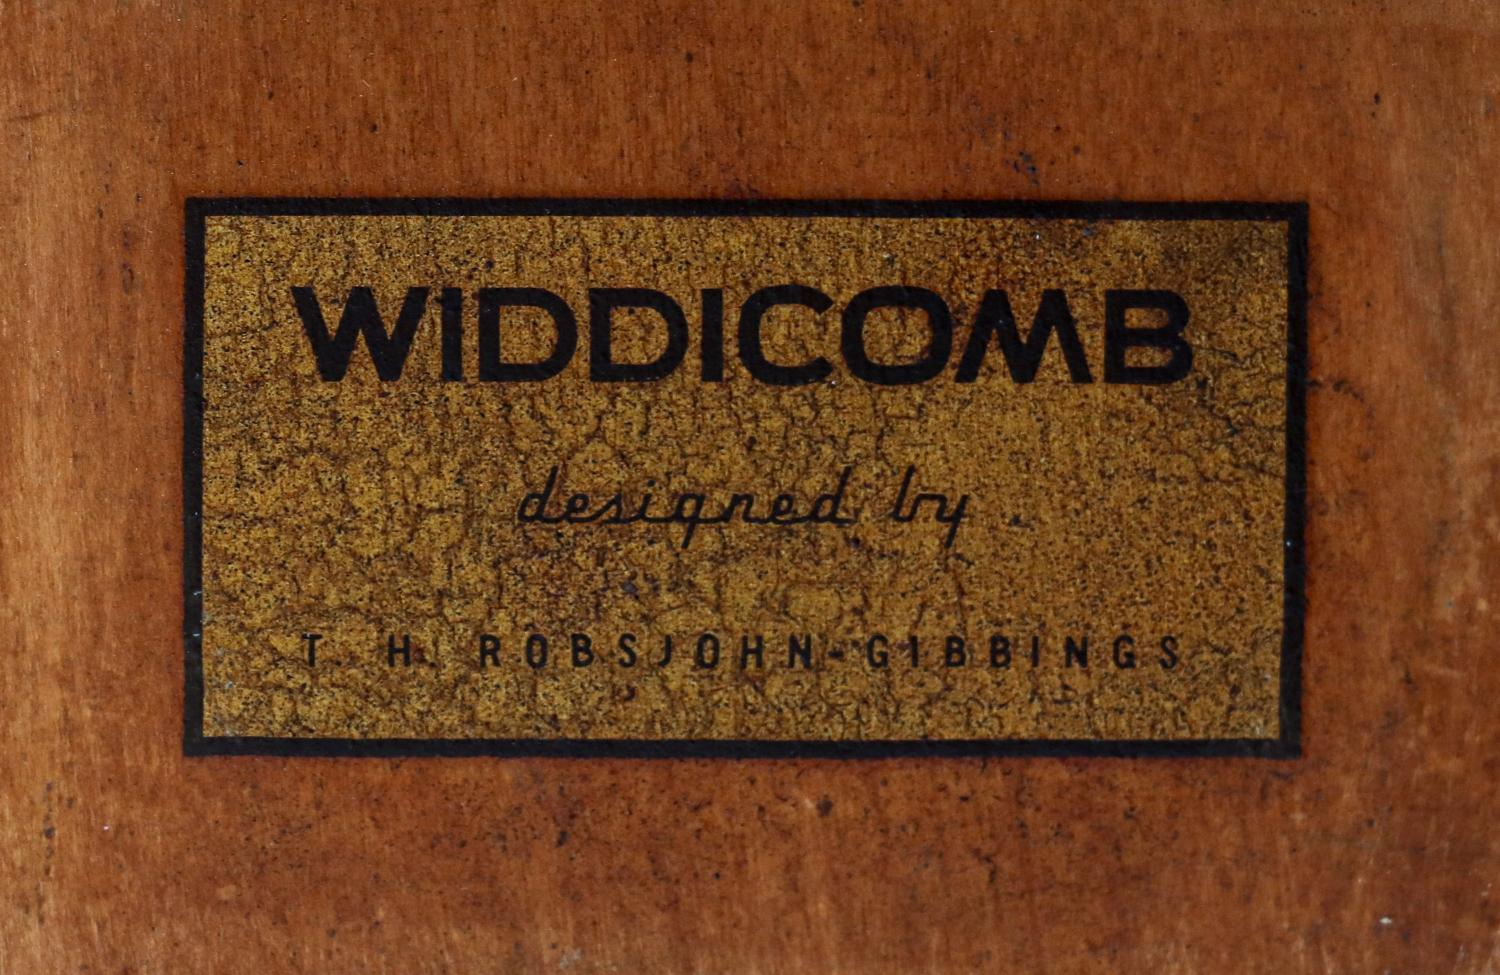 T.H. Robsjohn-Gibbings Model-4800 Expanding Dining Table for Widdicomb 8